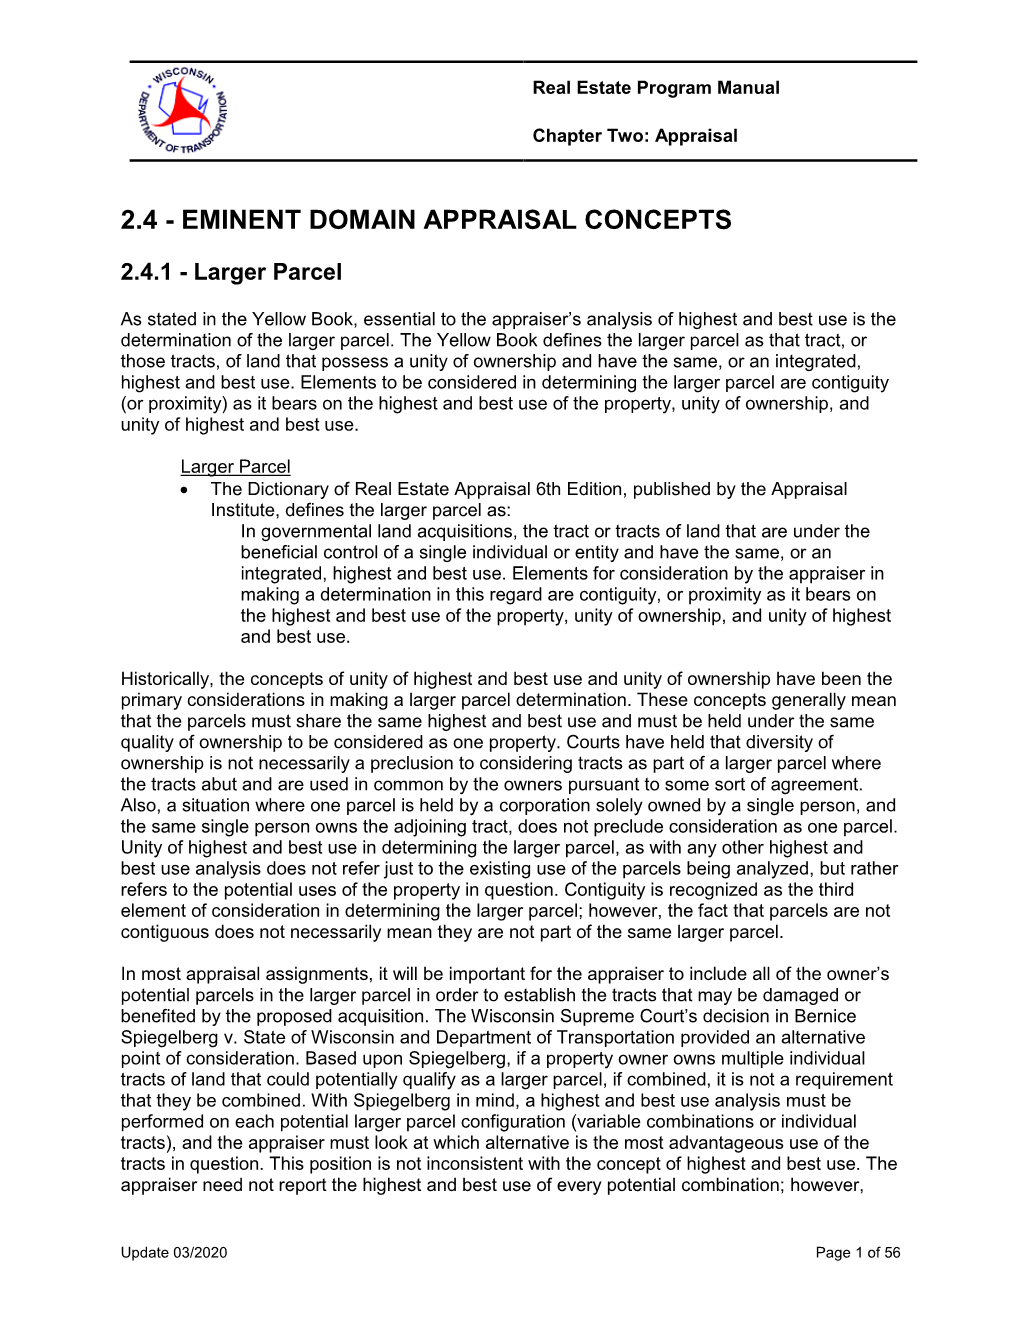 2.4 - Eminent Domain Appraisal Concepts